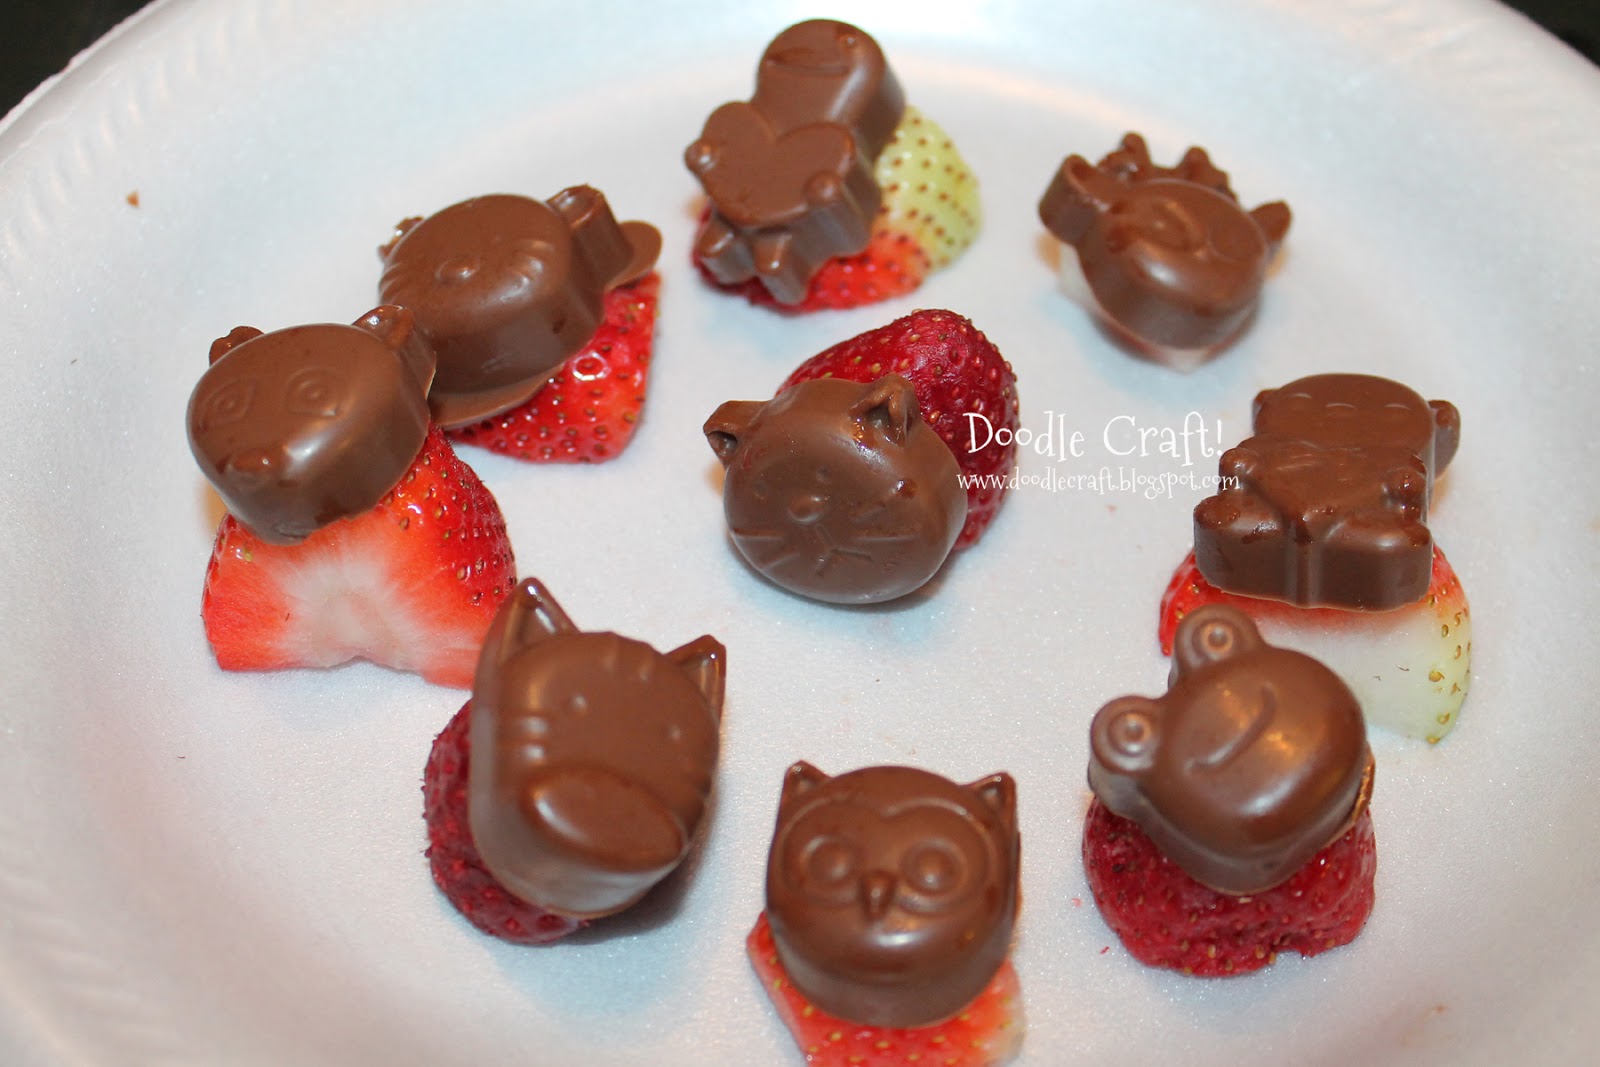 https://2.bp.blogspot.com/-uDwVWamRxEA/USz06wkB3-I/AAAAAAAAWRM/x6jfKesyb_c/s1600/animal+faced+strawberries+fun+food+crafts+creative.jpg